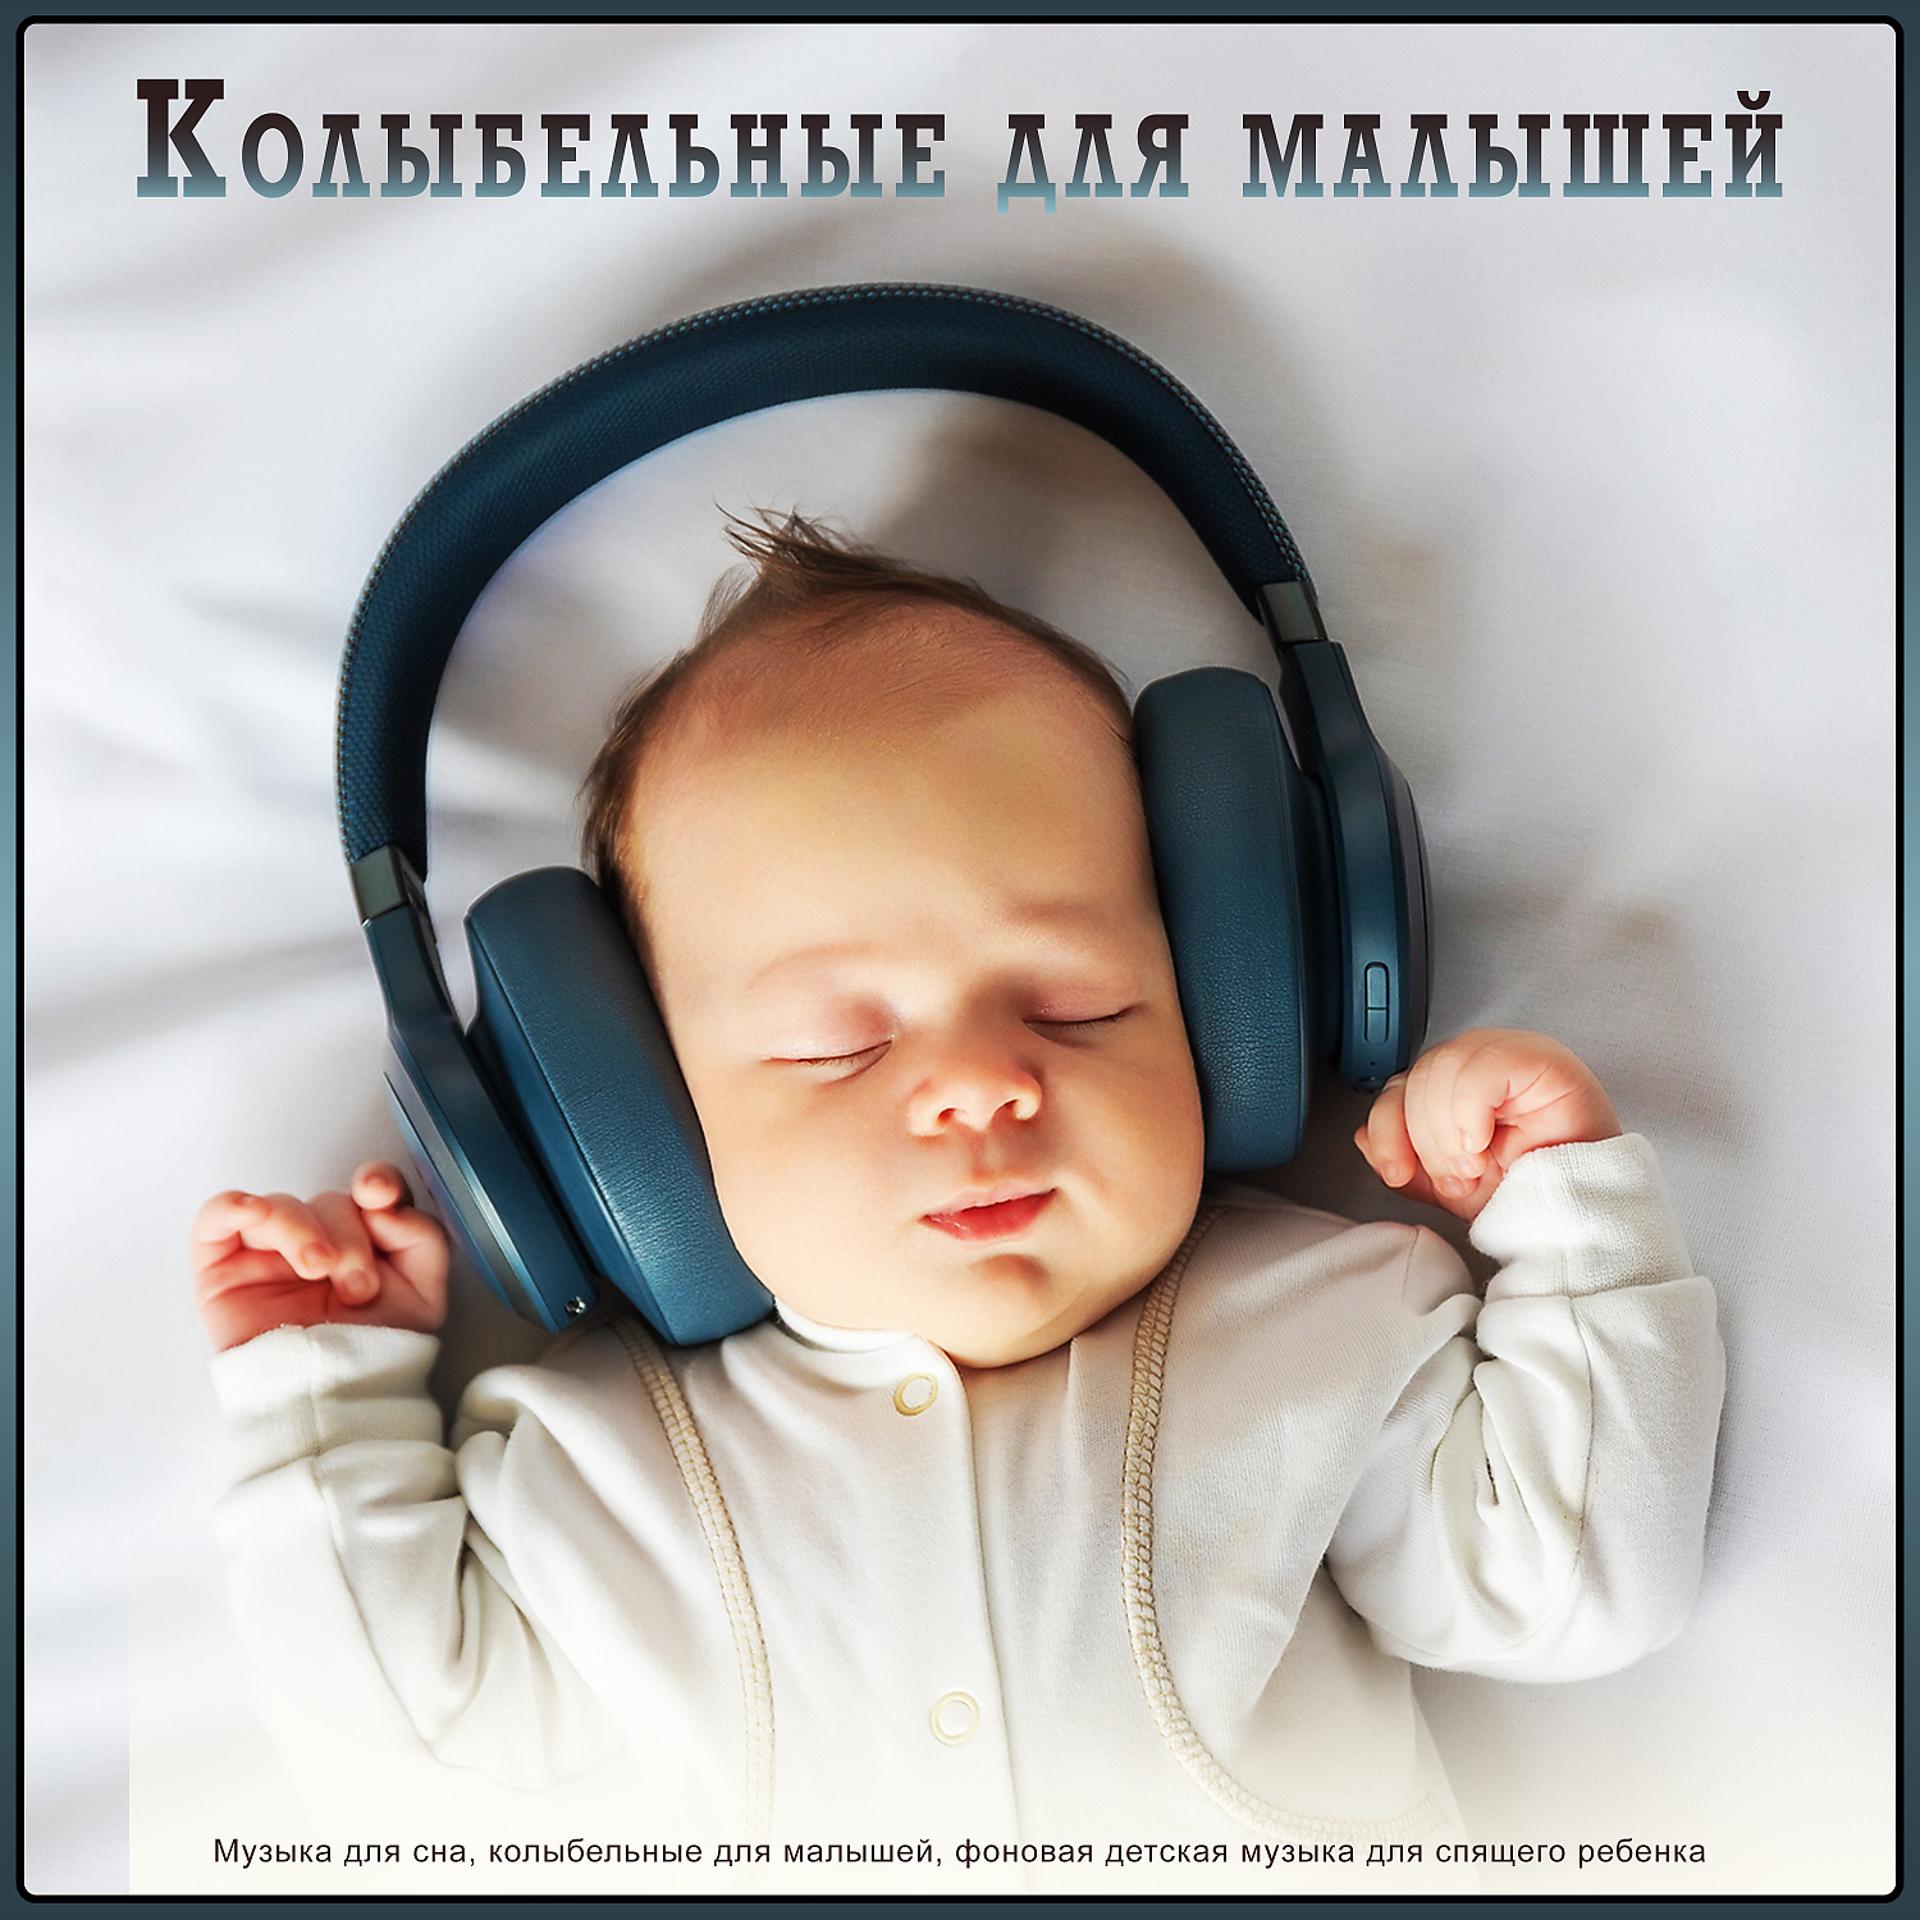 Мелодия успокаивающая для малышей слушать сна. Музыка для сна младенца. Музыка для сна для малышей. Мелодии для засыпания малышей. Колыбельная для малышей успокаивающая.